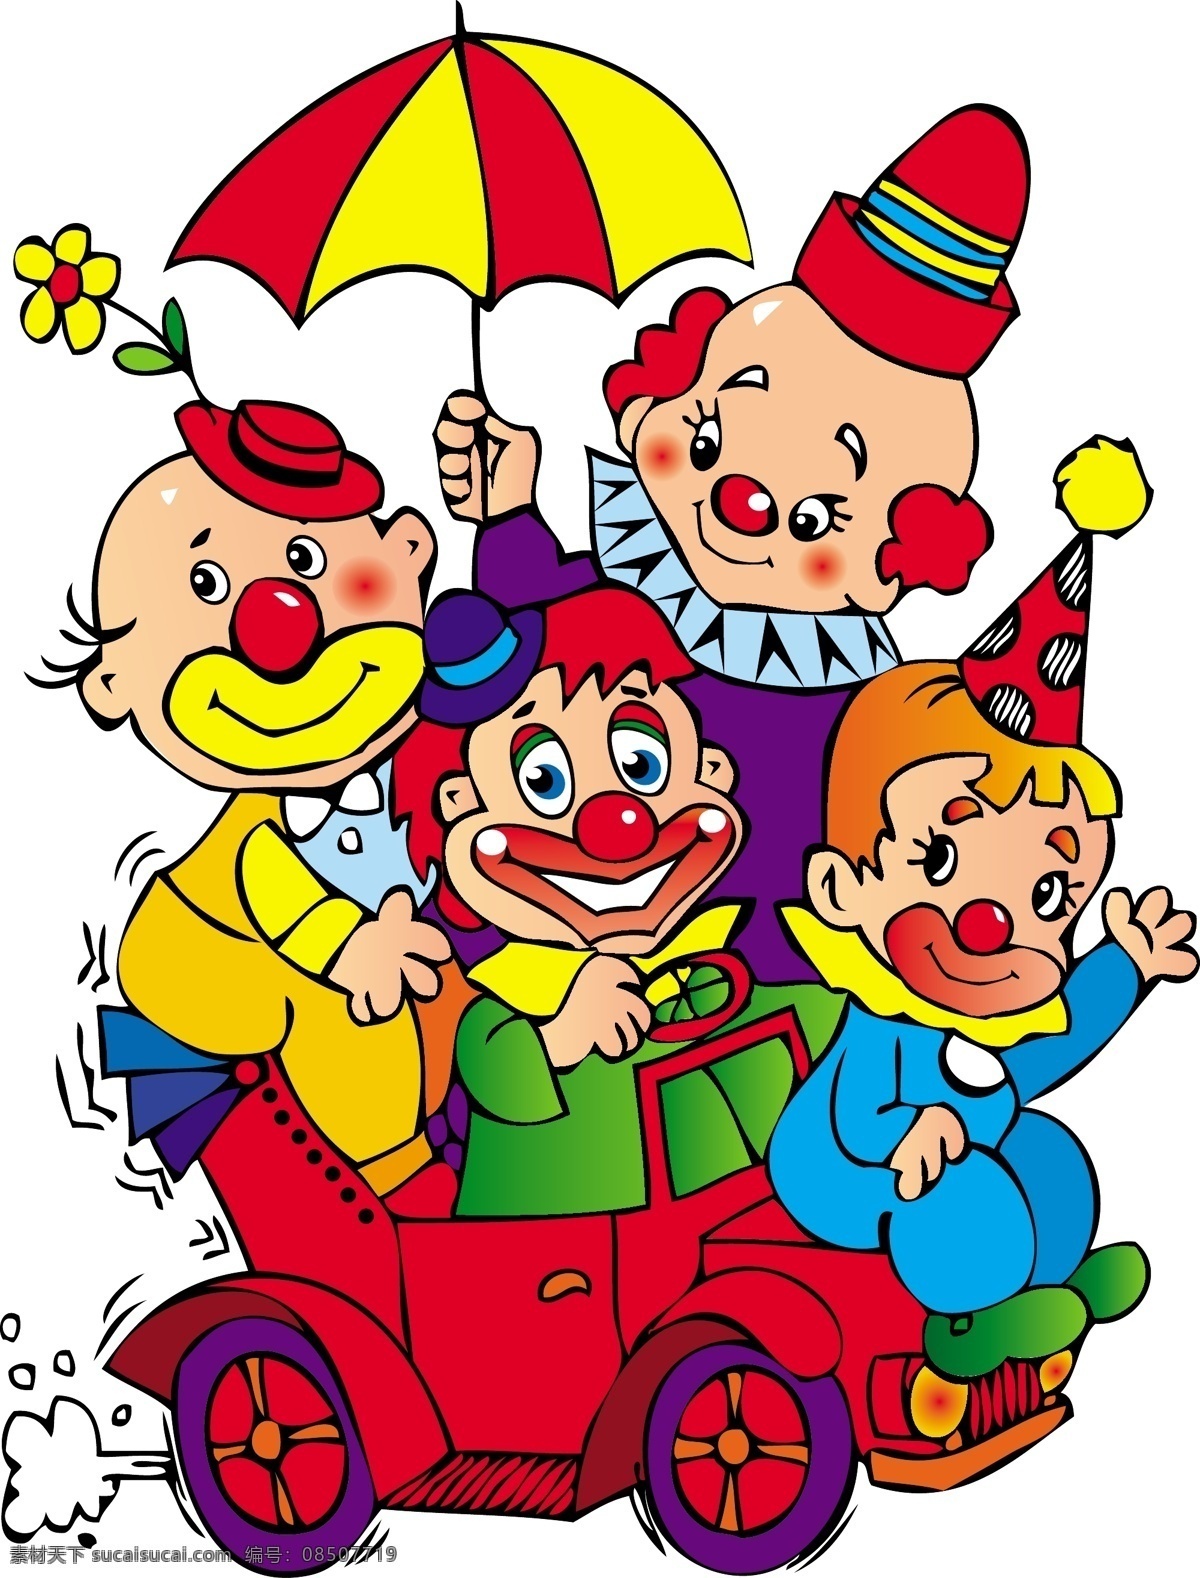 欢乐 小丑 游乐 节日 可爱 玩耍 小孩 游乐园 矢量图 矢量人物